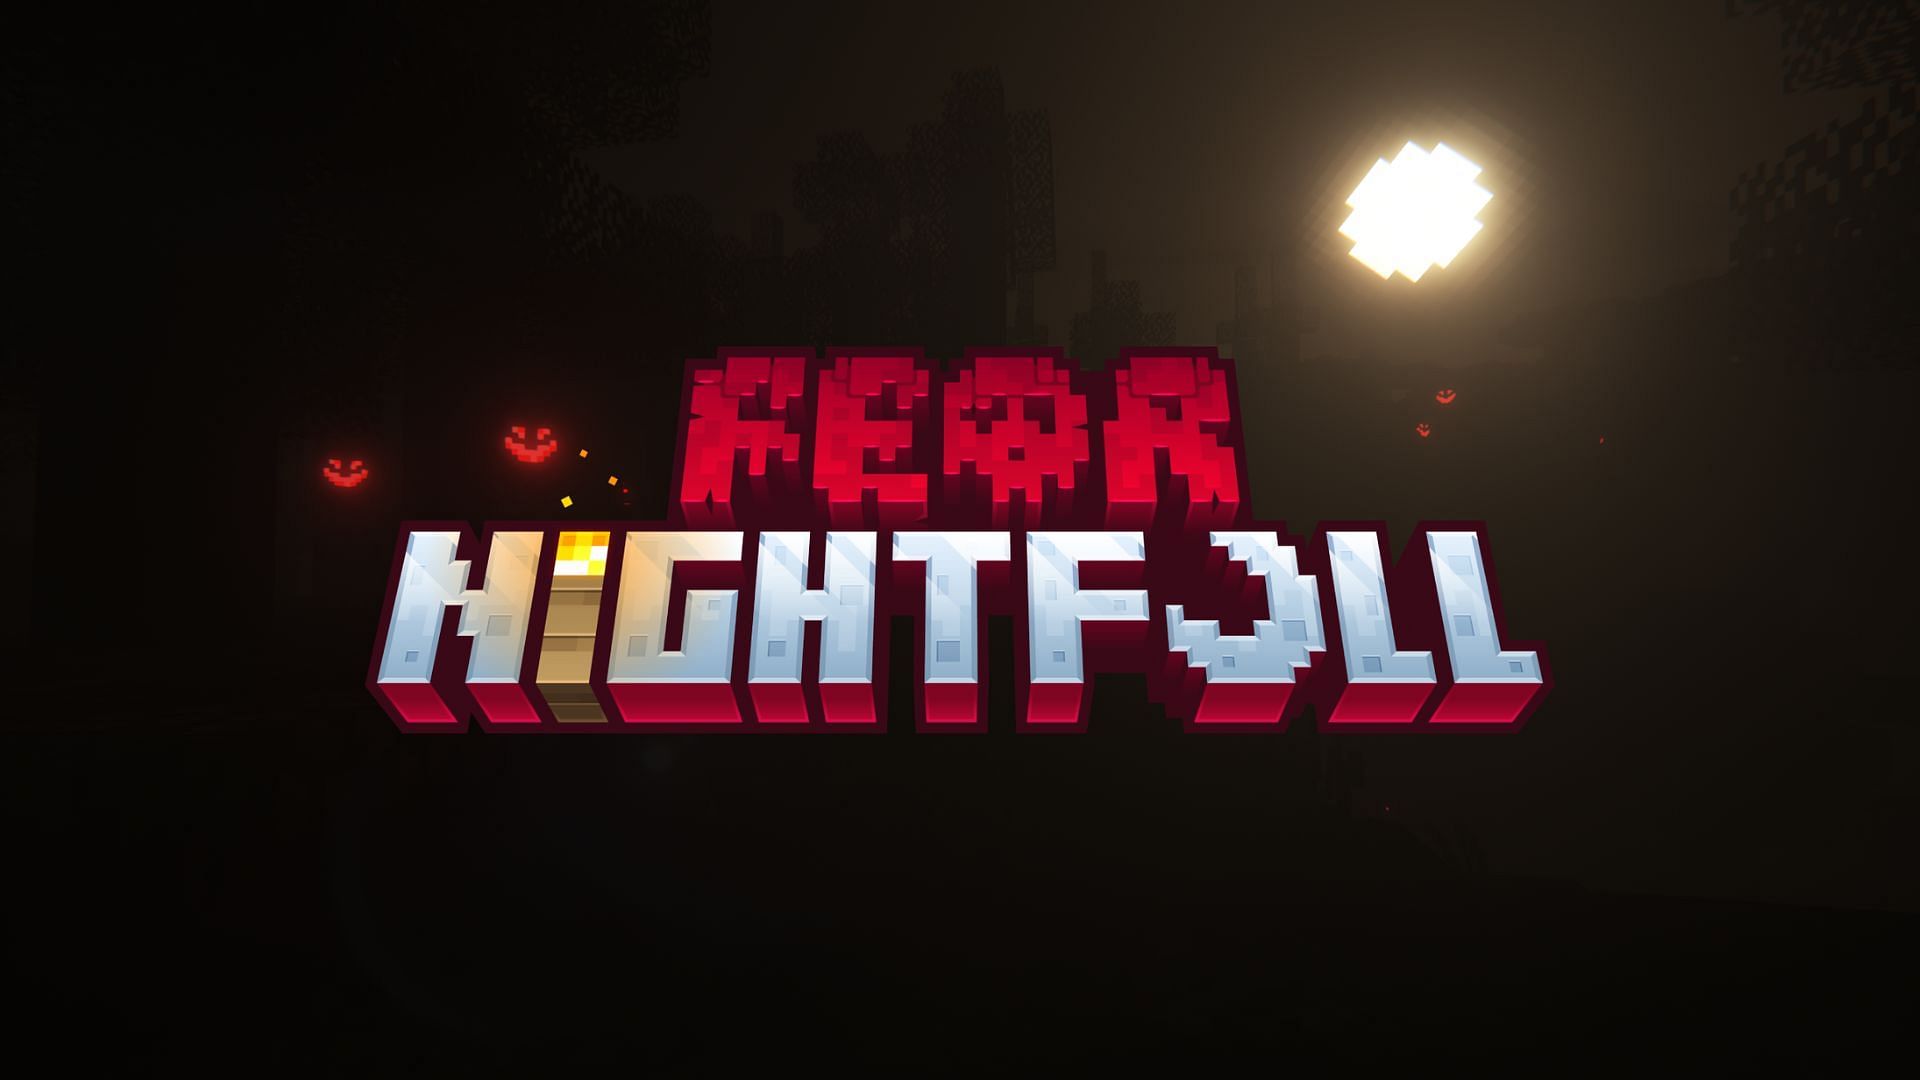 Fear Nightfall (Image via Curseforge)